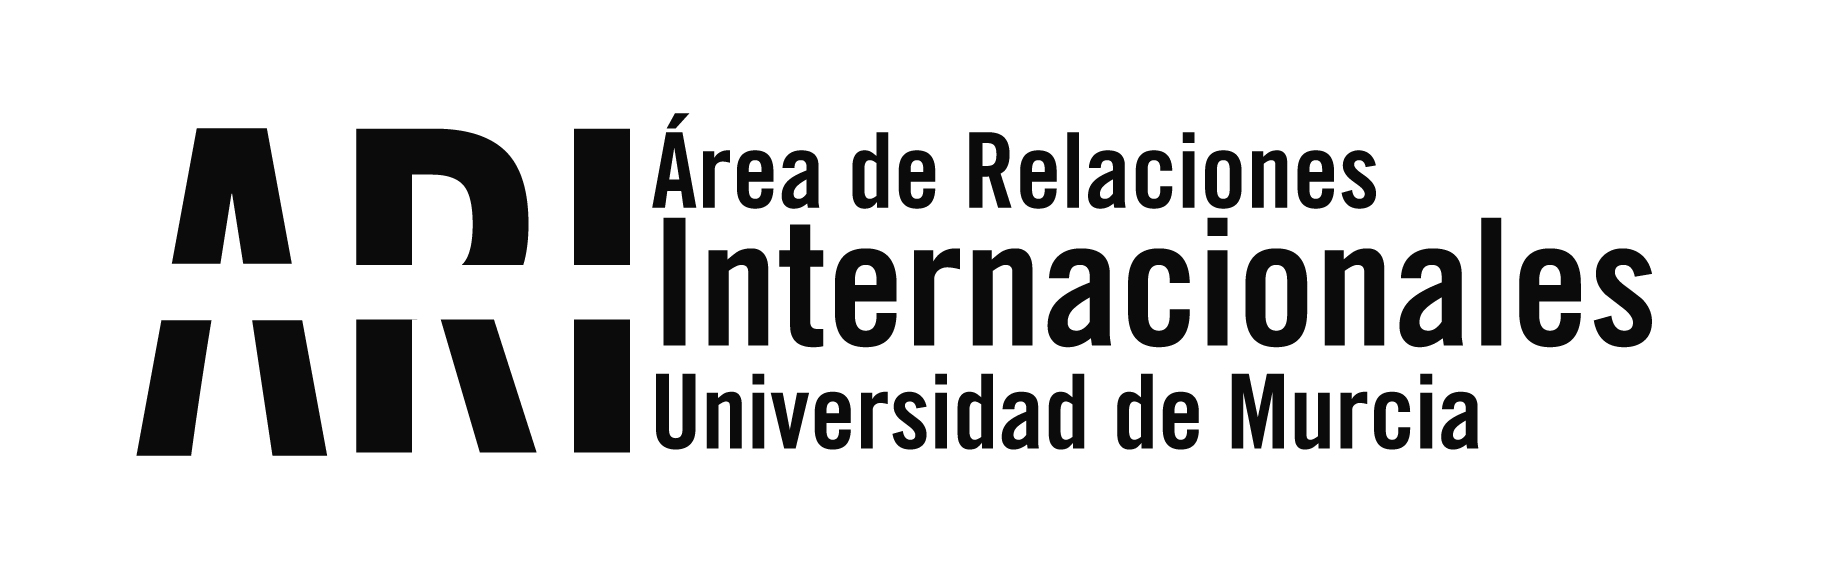 Plataforma de alojamiento para estudiantes y personal internacional en la UMU - Área de Relaciones Internacionales